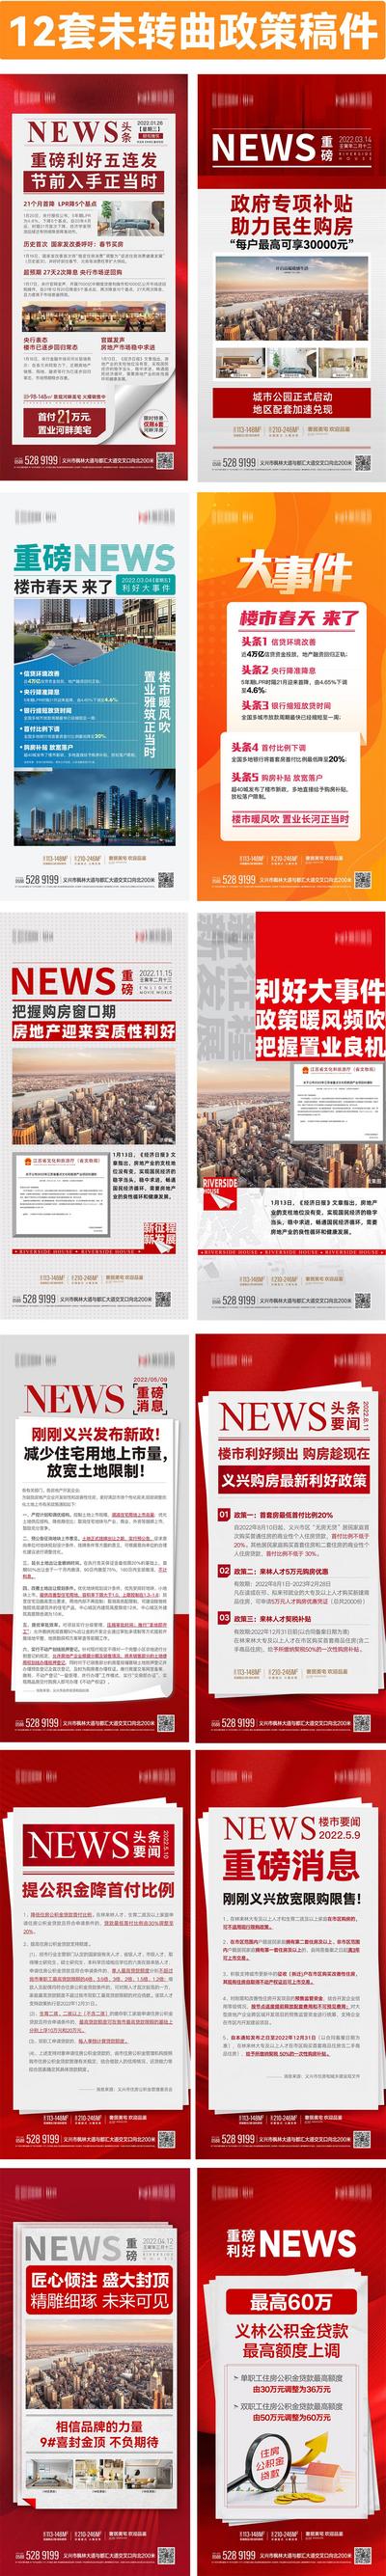 南门网 海报 房地产 重磅消息 新闻 大事件 政策 利好 快讯 资讯